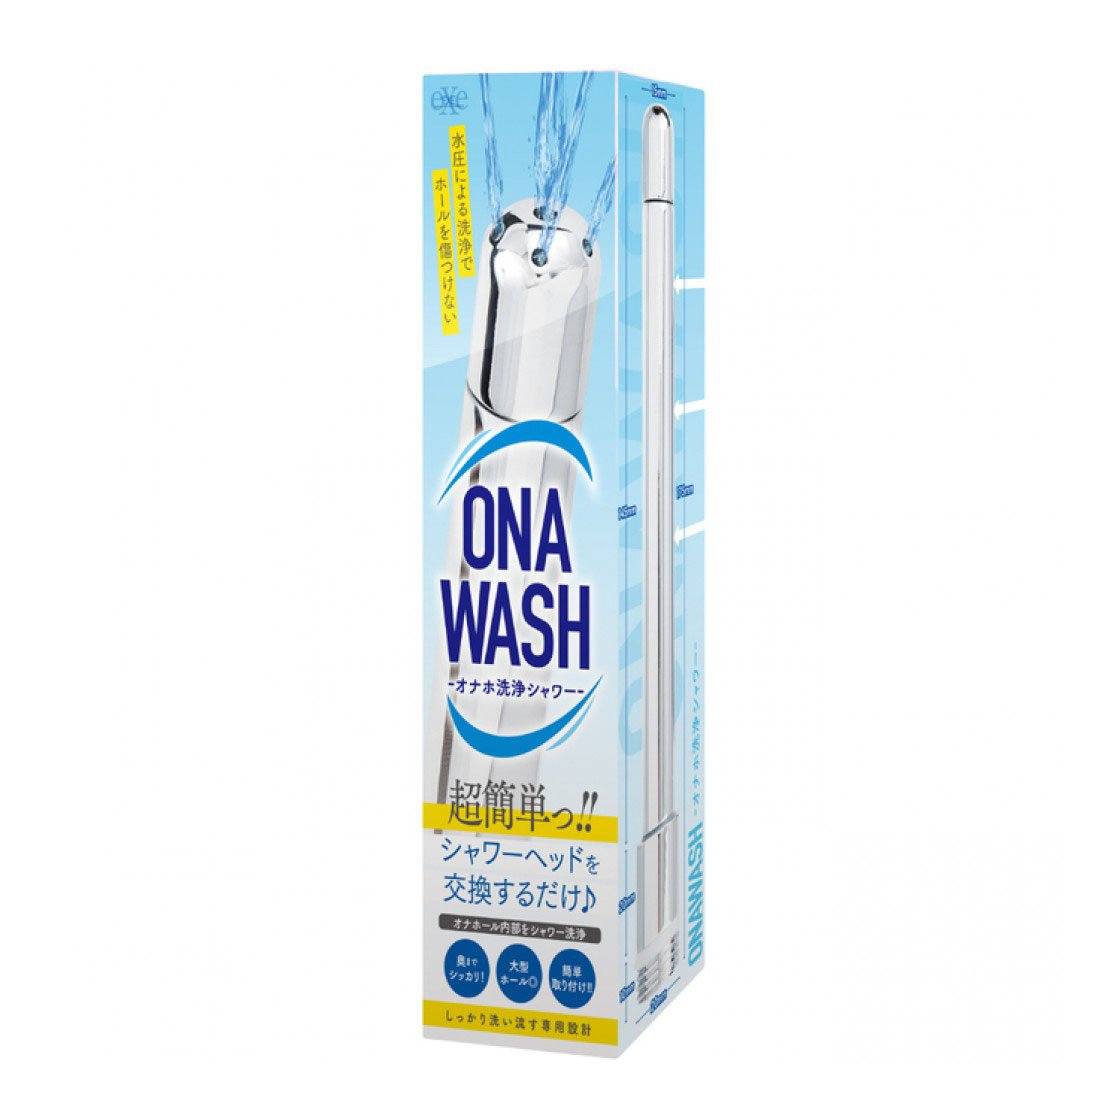 EXE Ona Wash 多功能 6 向排水清洗噴注器 情趣用品清潔及配件 購買